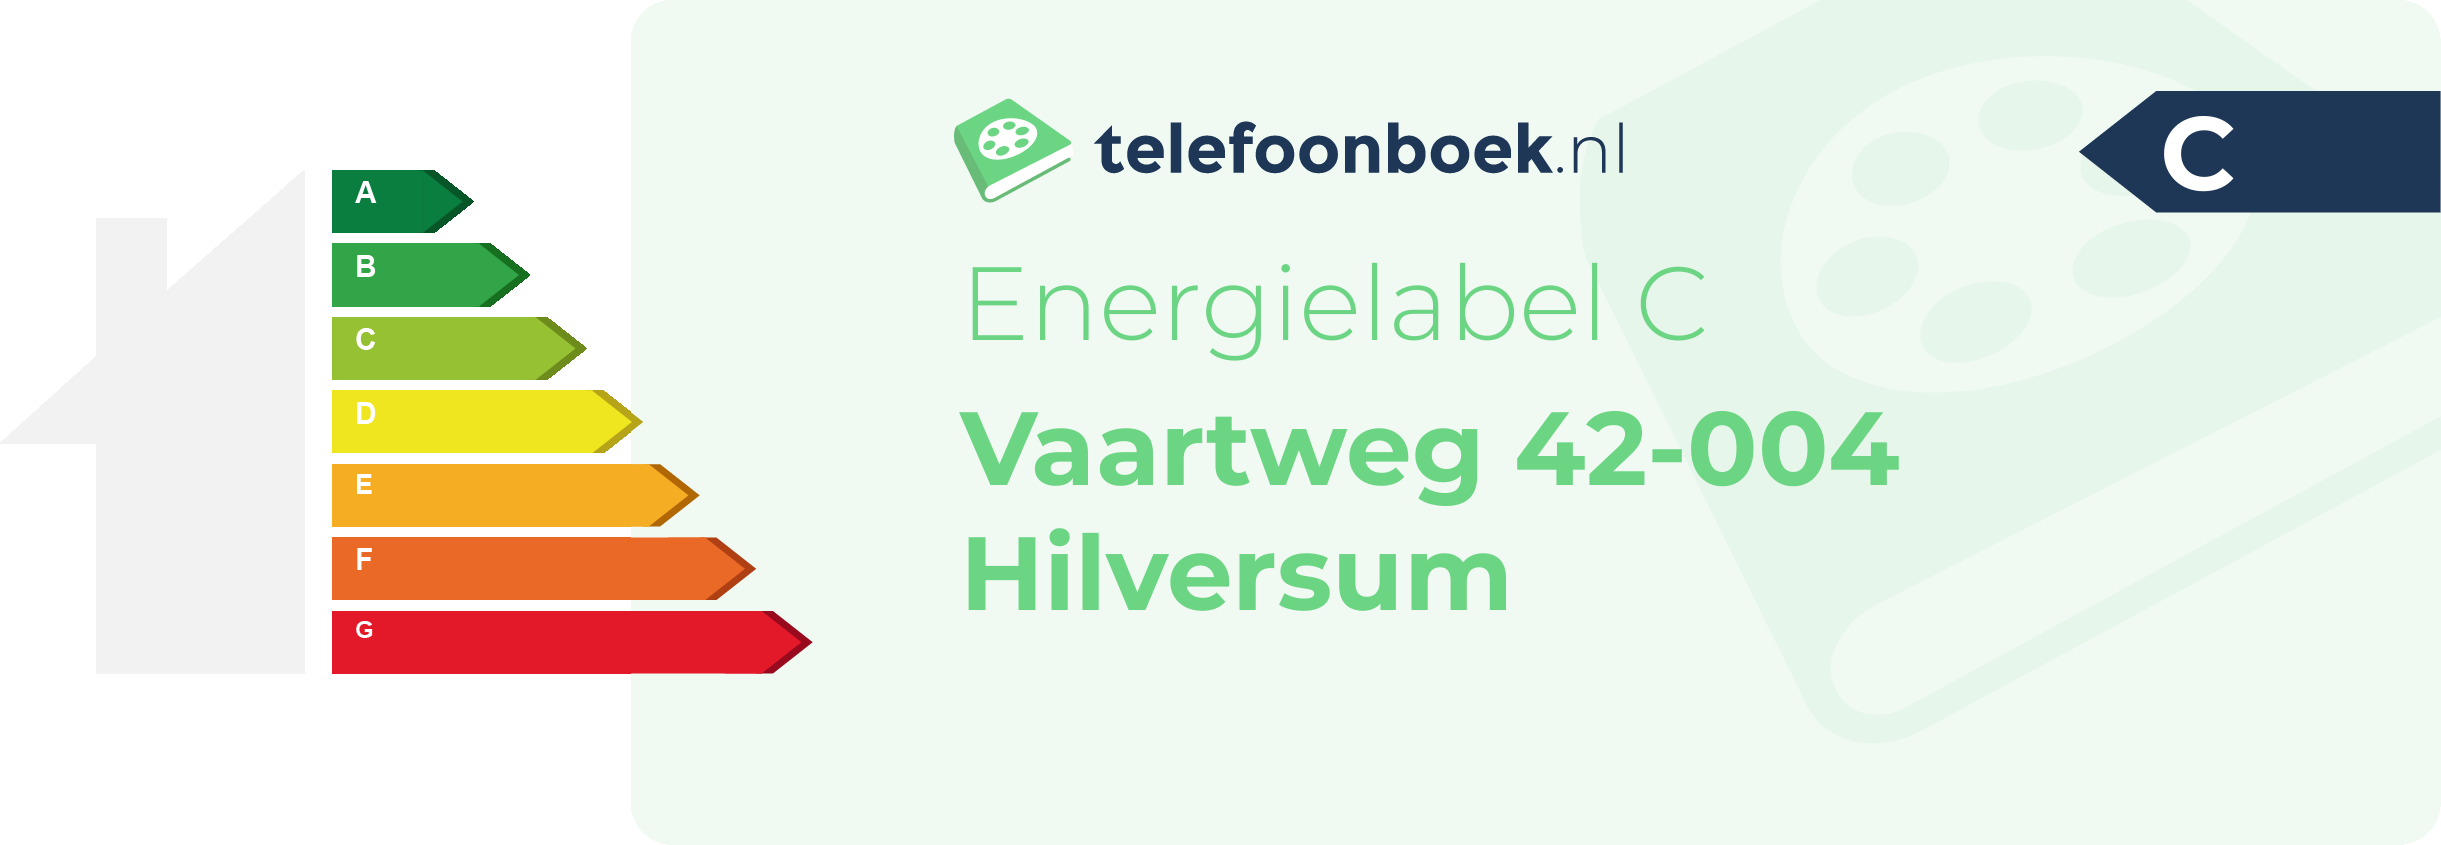 Energielabel Vaartweg 42-004 Hilversum